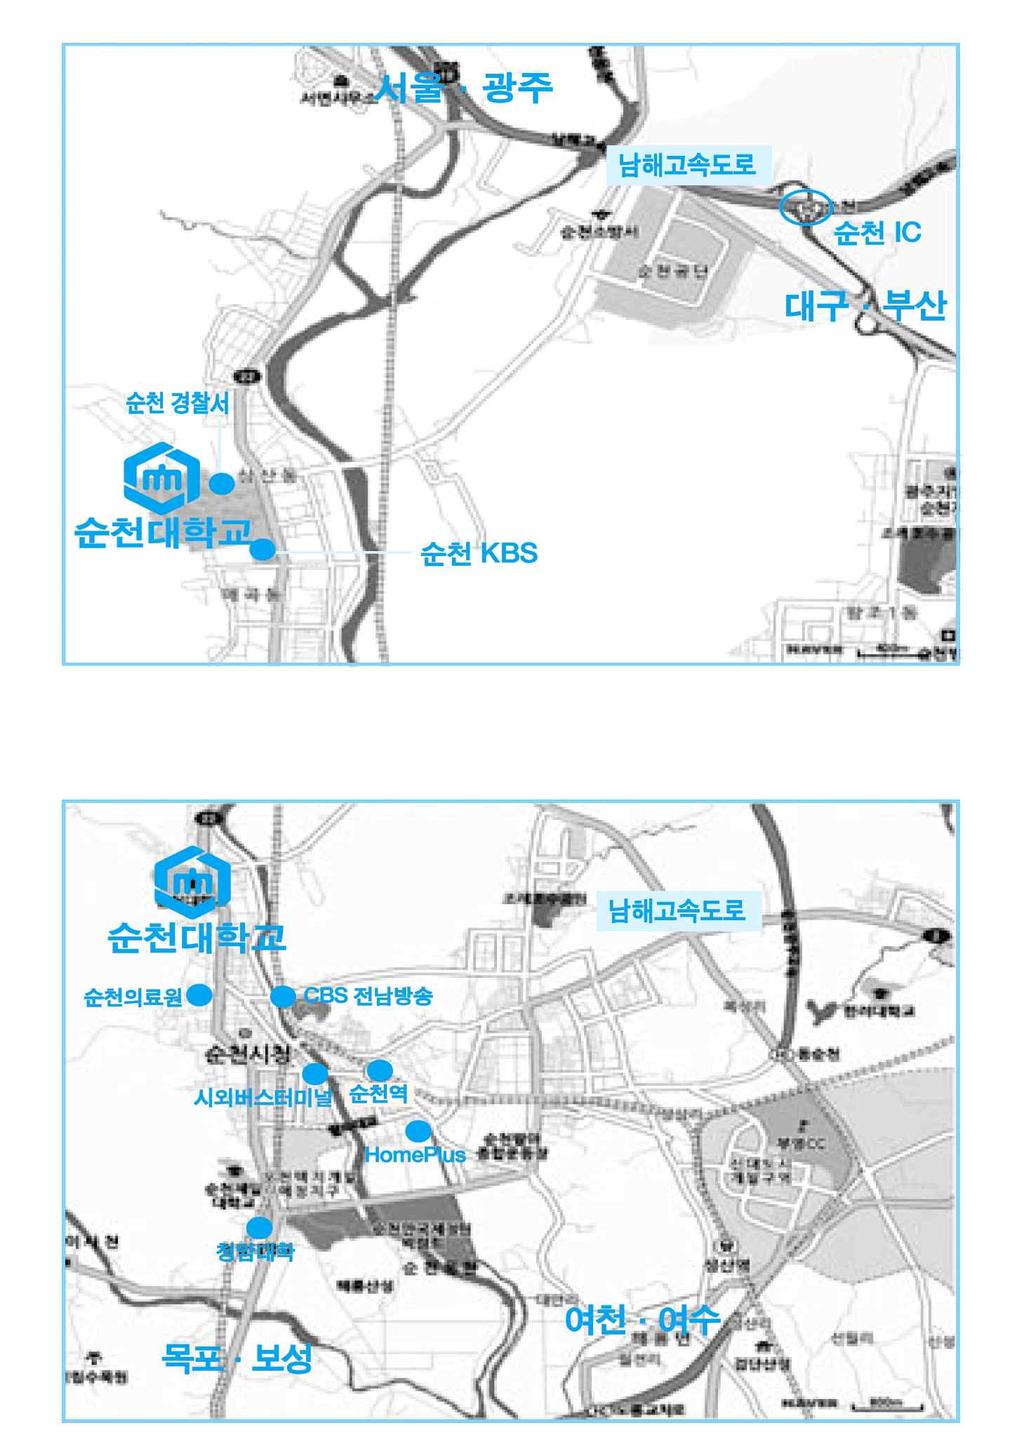 찾아오시는길 t 서울 부산방면 t 여수 목포방면 항공 ( 여수공항 ) 이용 Ÿ 여수공항에서택시로 30분 ( 요금20,000원 ) 정도소요 Ÿ 시내버스 (96번) 를이용할경우순천대학교정문에서하차가능 (50분정도소요 ) 철도이용 : 순천역하차, 택시 20분 ( 요금 5,000원 ), 시내버스 30분정도소요 고속 / 시외버스이용 : 터미널하차, 택시 15분 (